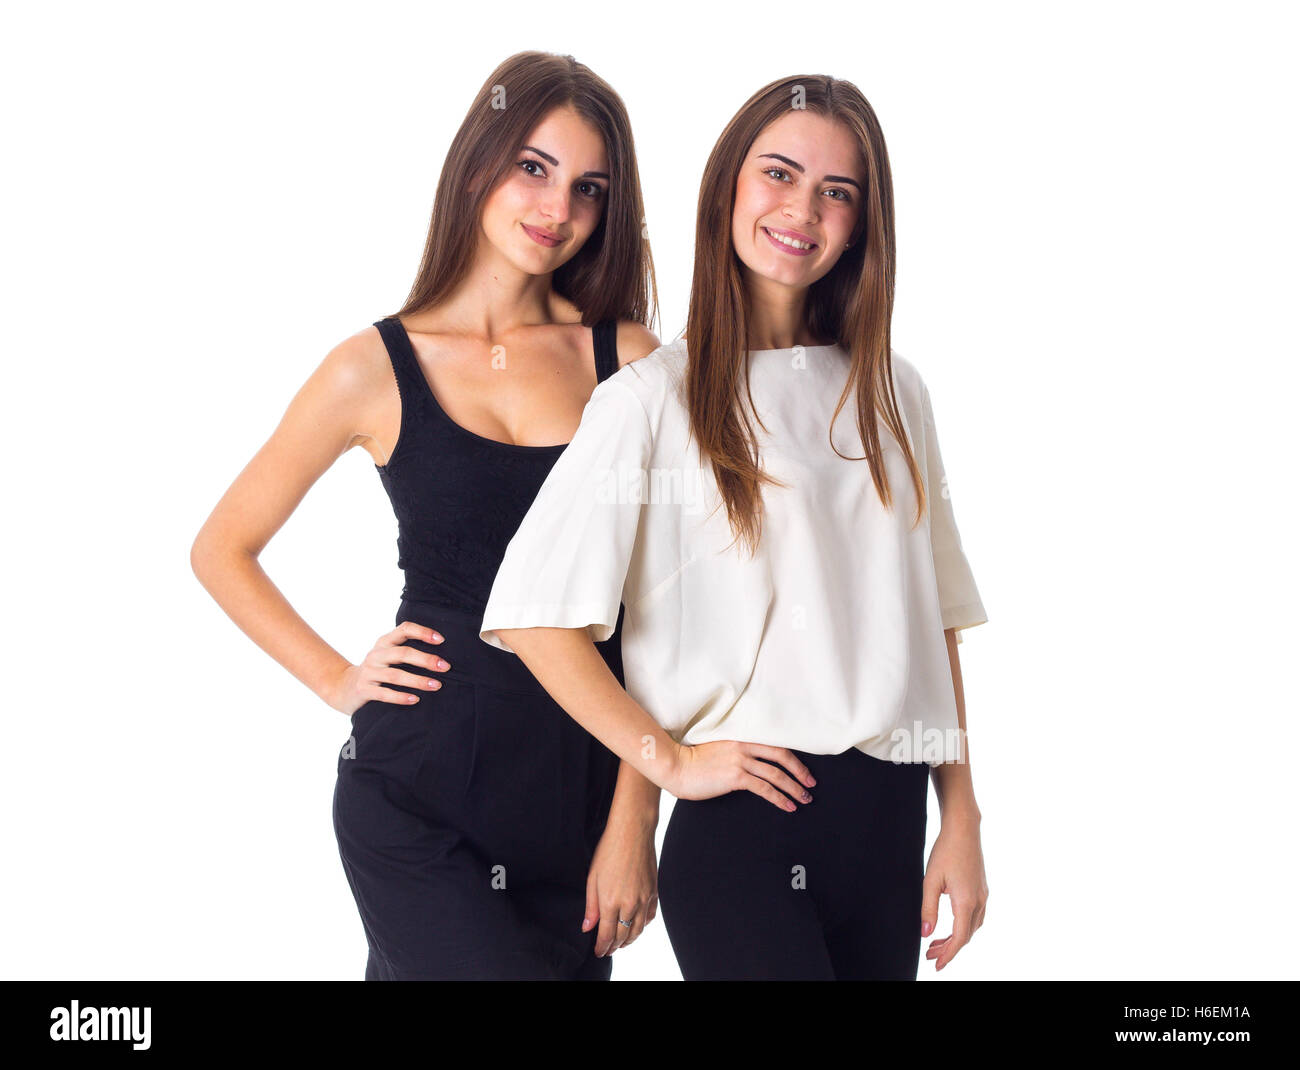 Deux jeunes woman standing and smiling Banque D'Images